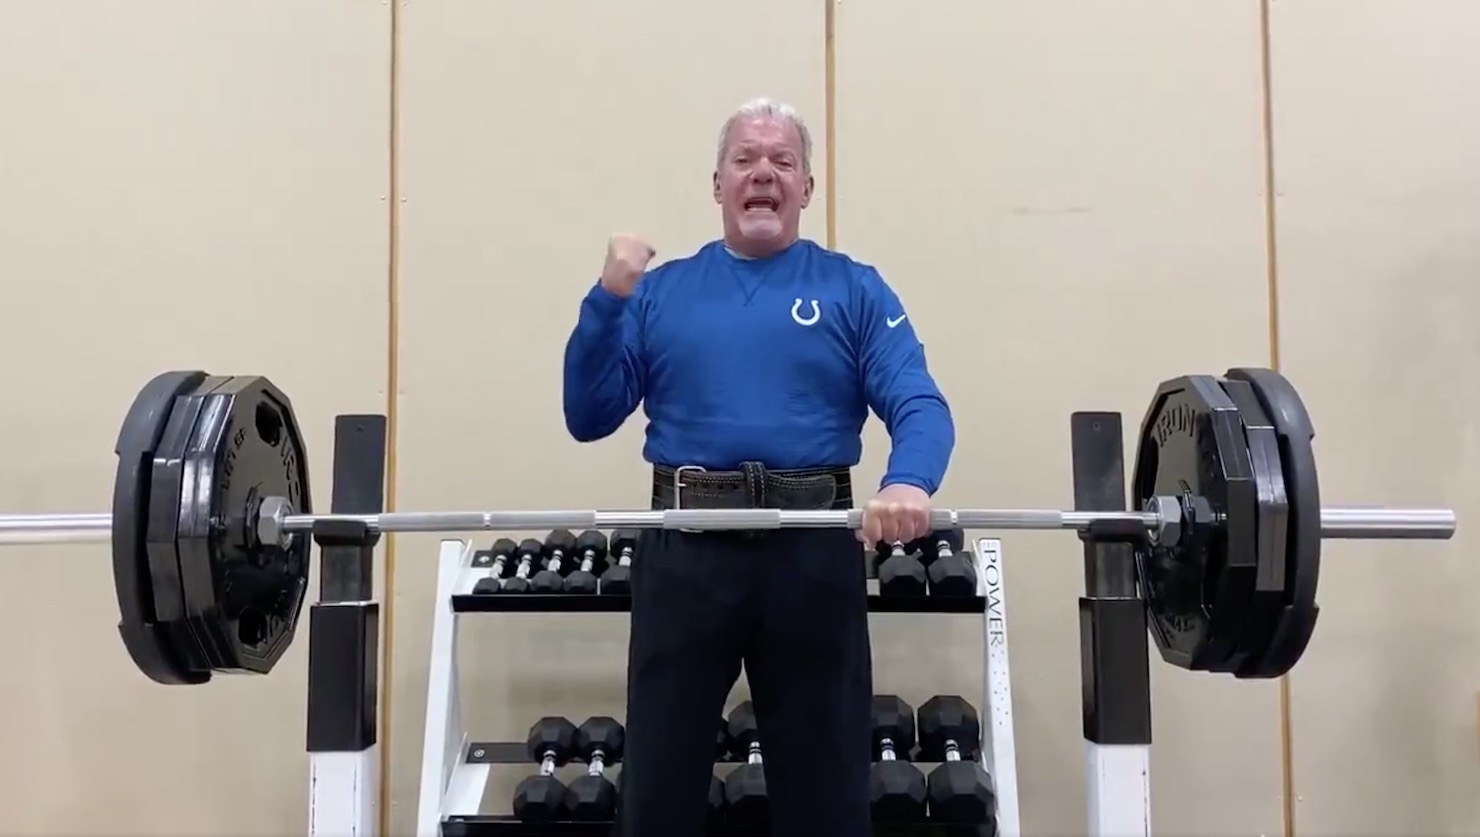 Jim Irsay lifts weights